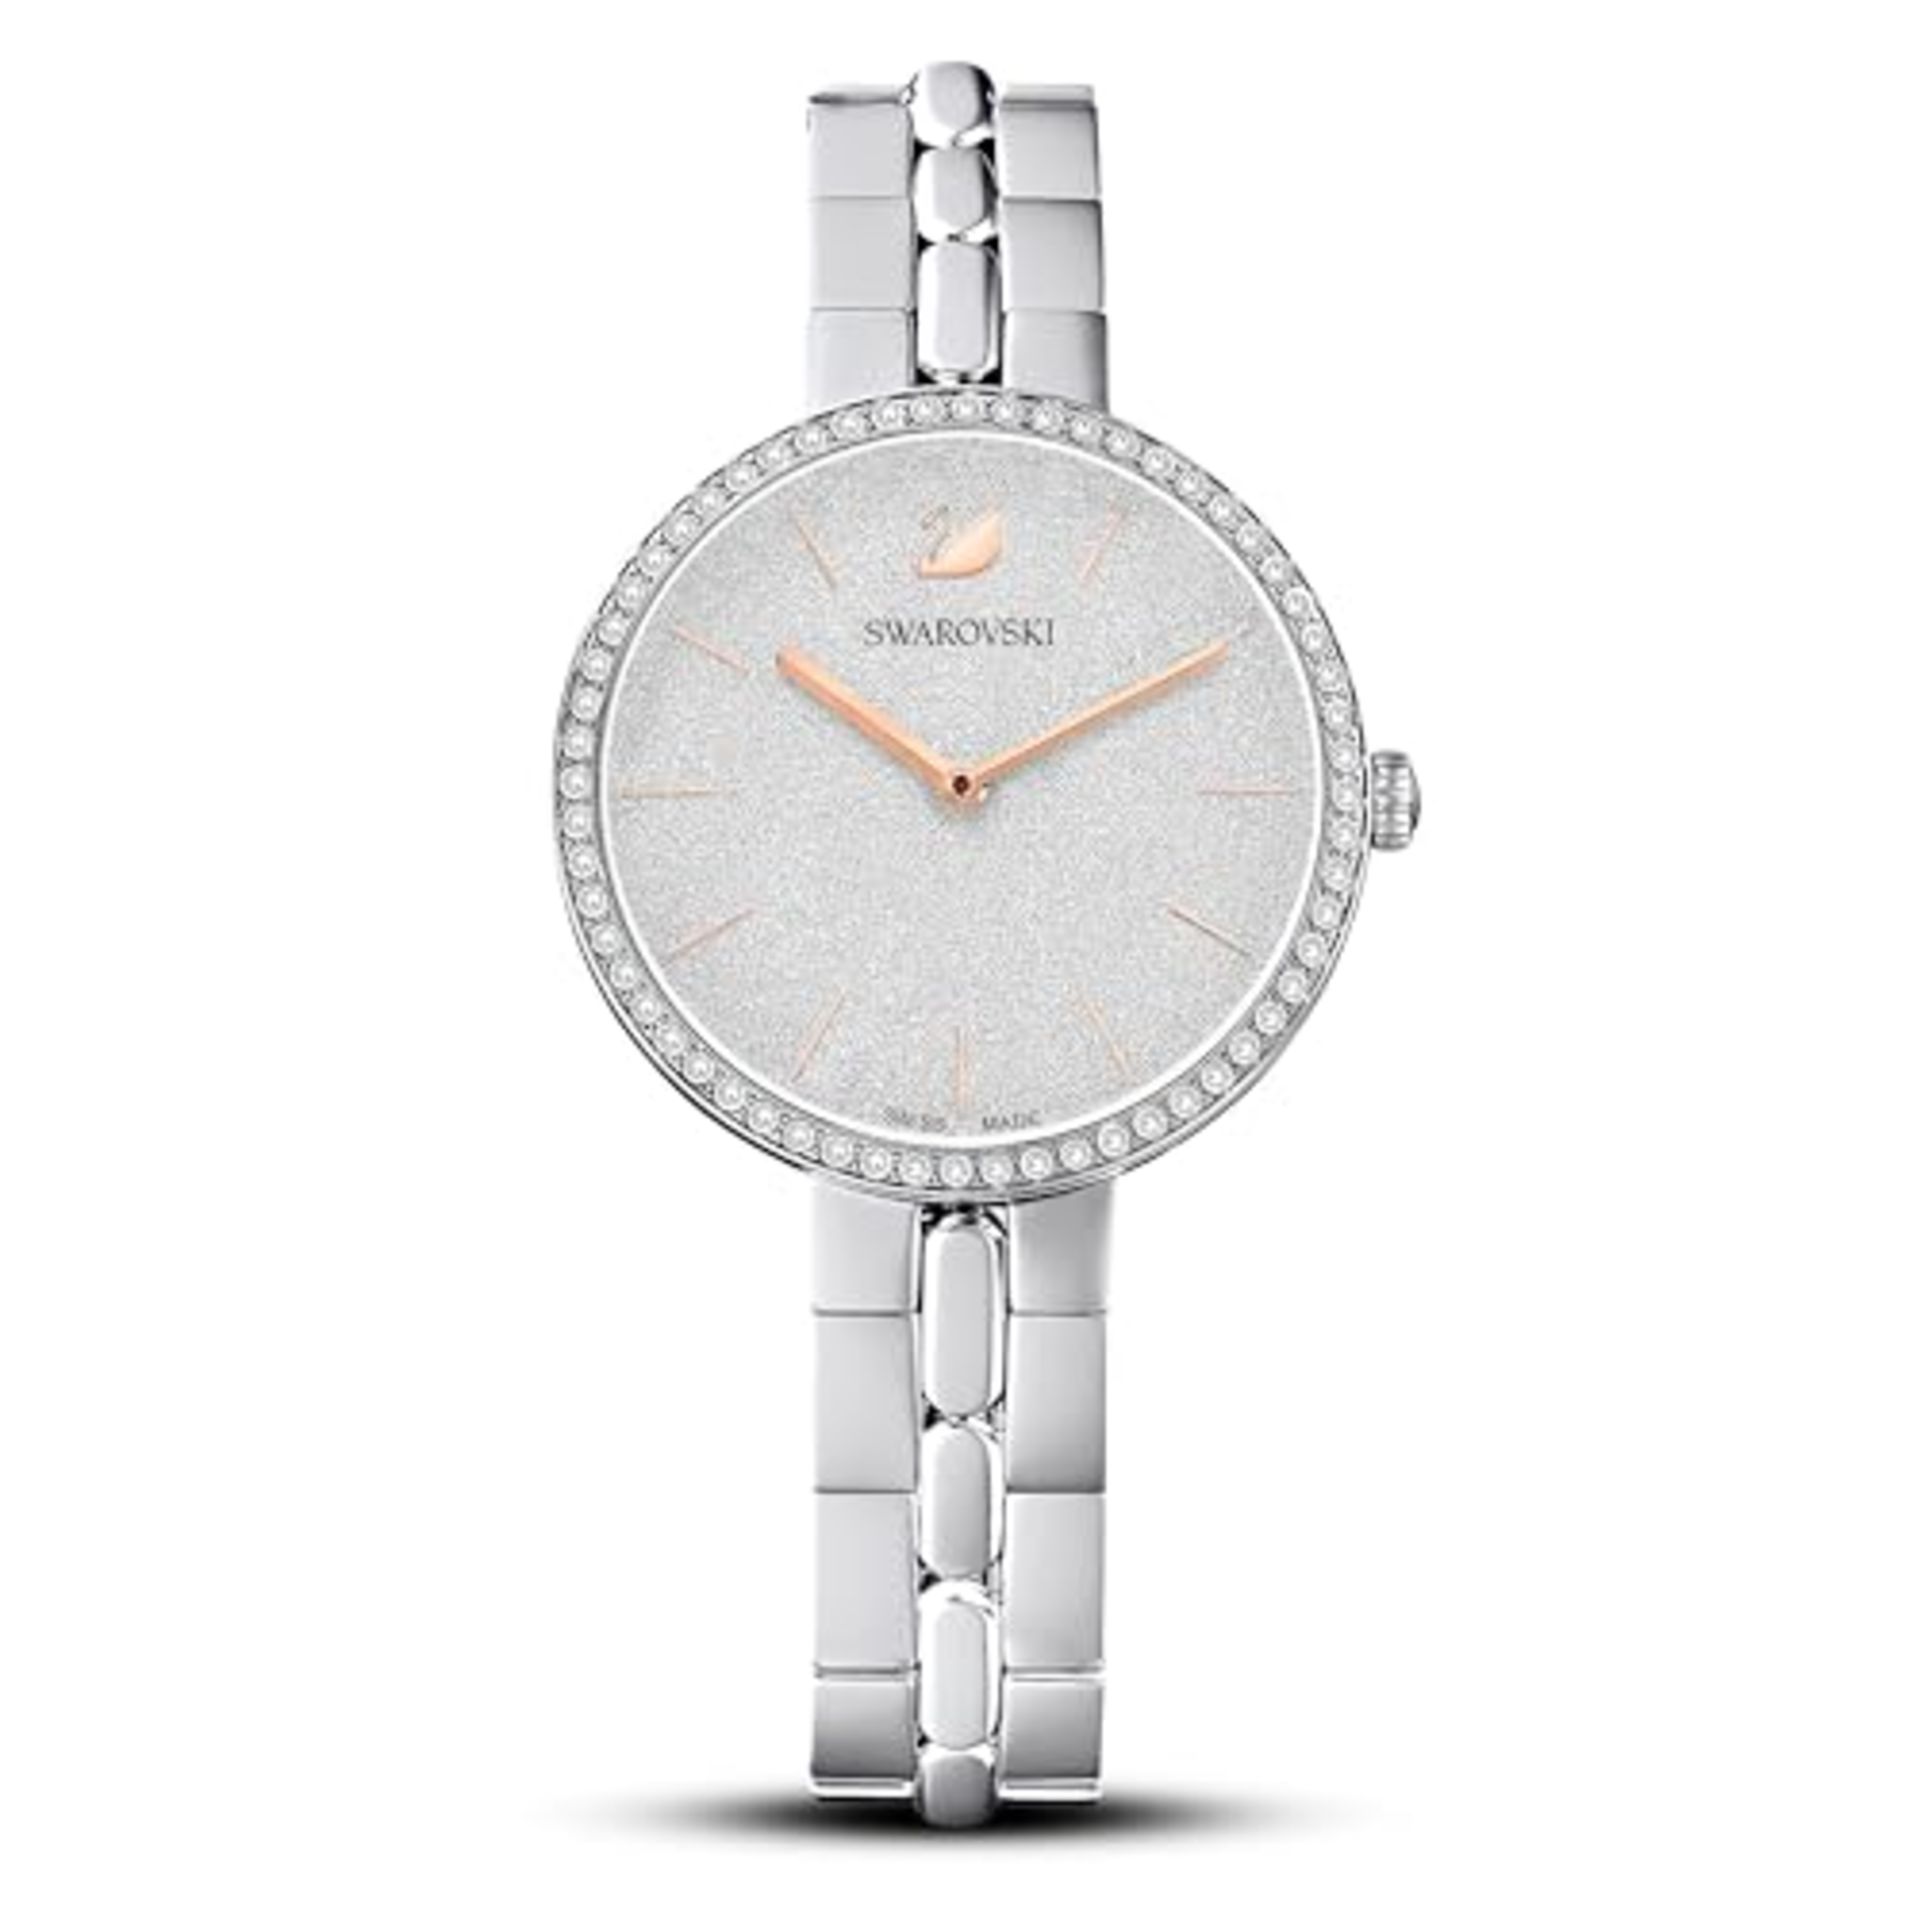 RRP £158.00 Swarovski Cosmopolitan watch, metal bracelet, silver-colored, stainless steel